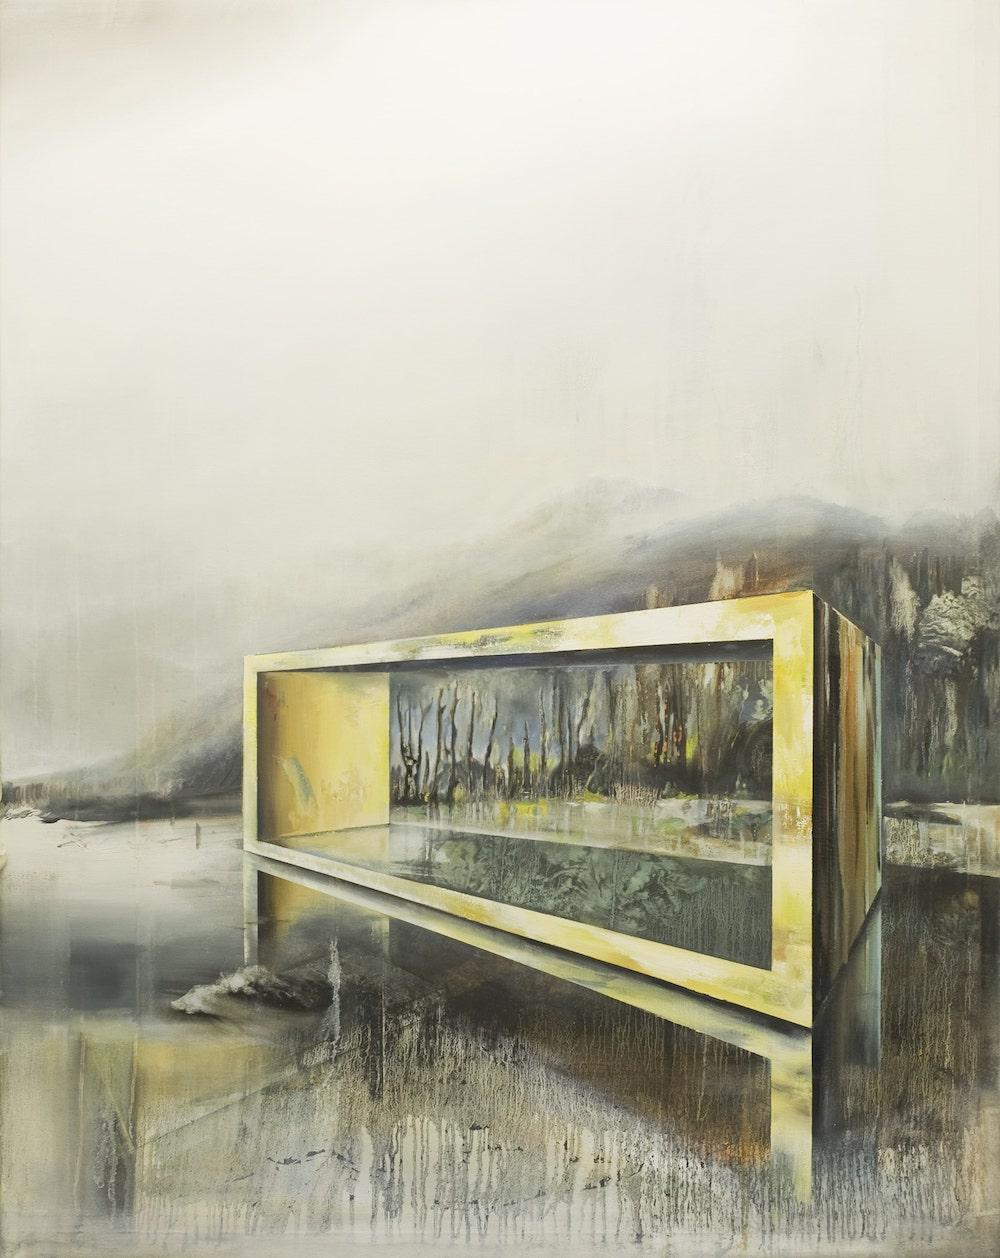 Wandelsgrund ist ein einzigartiges Ölgemälde auf Leinwand des zeitgenössischen Künstlers Emanuel Schulze mit den Maßen 140 × 110 cm (55,1 × 43,3 in).
Das Kunstwerk ist signiert, wird ungerahmt verkauft und wird mit einem Echtheitszertifikat